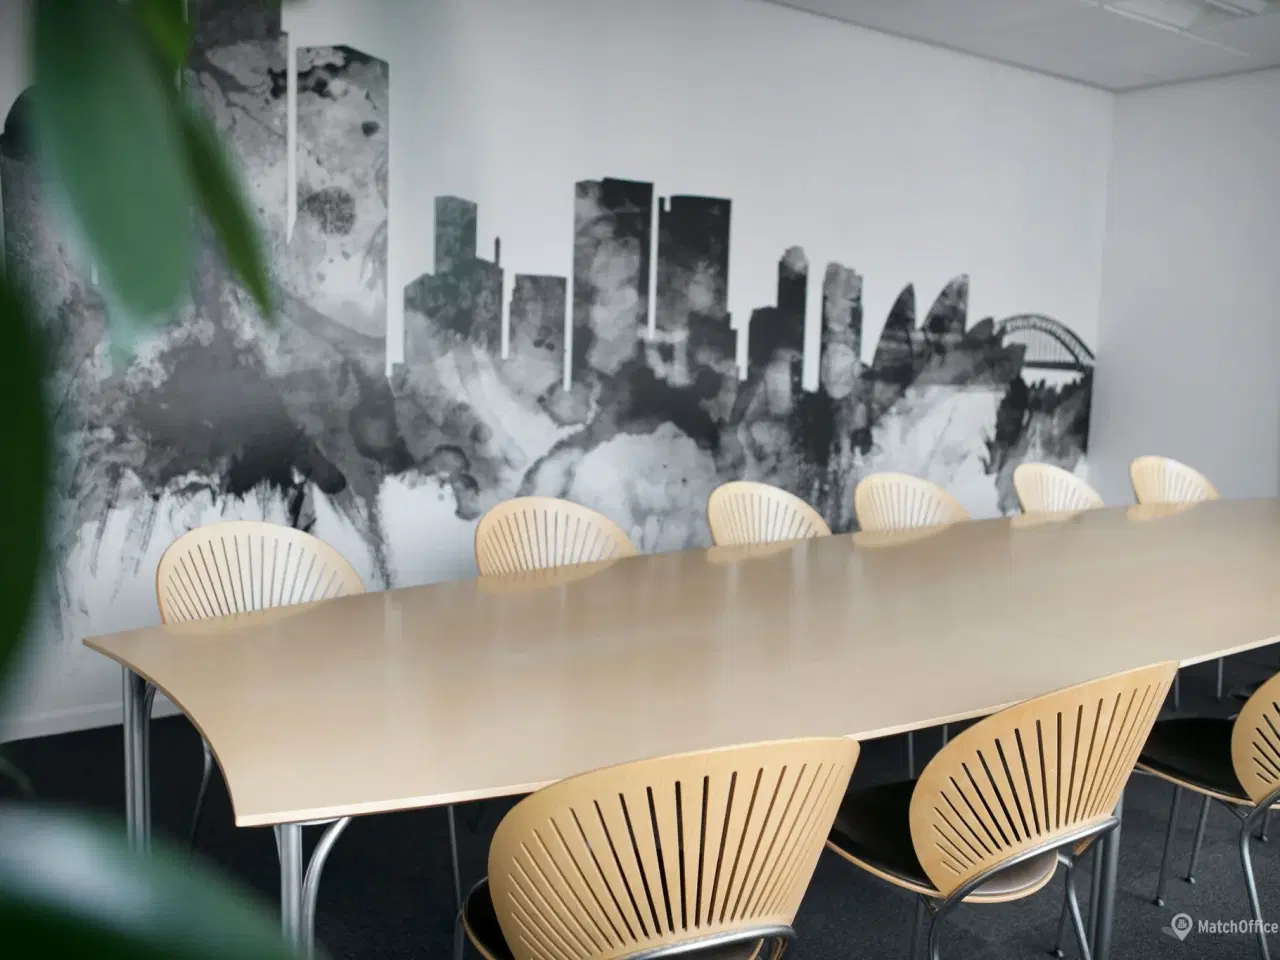 Billede 18 - Billigt kontor i Danmarks svar på Silicon Valley?